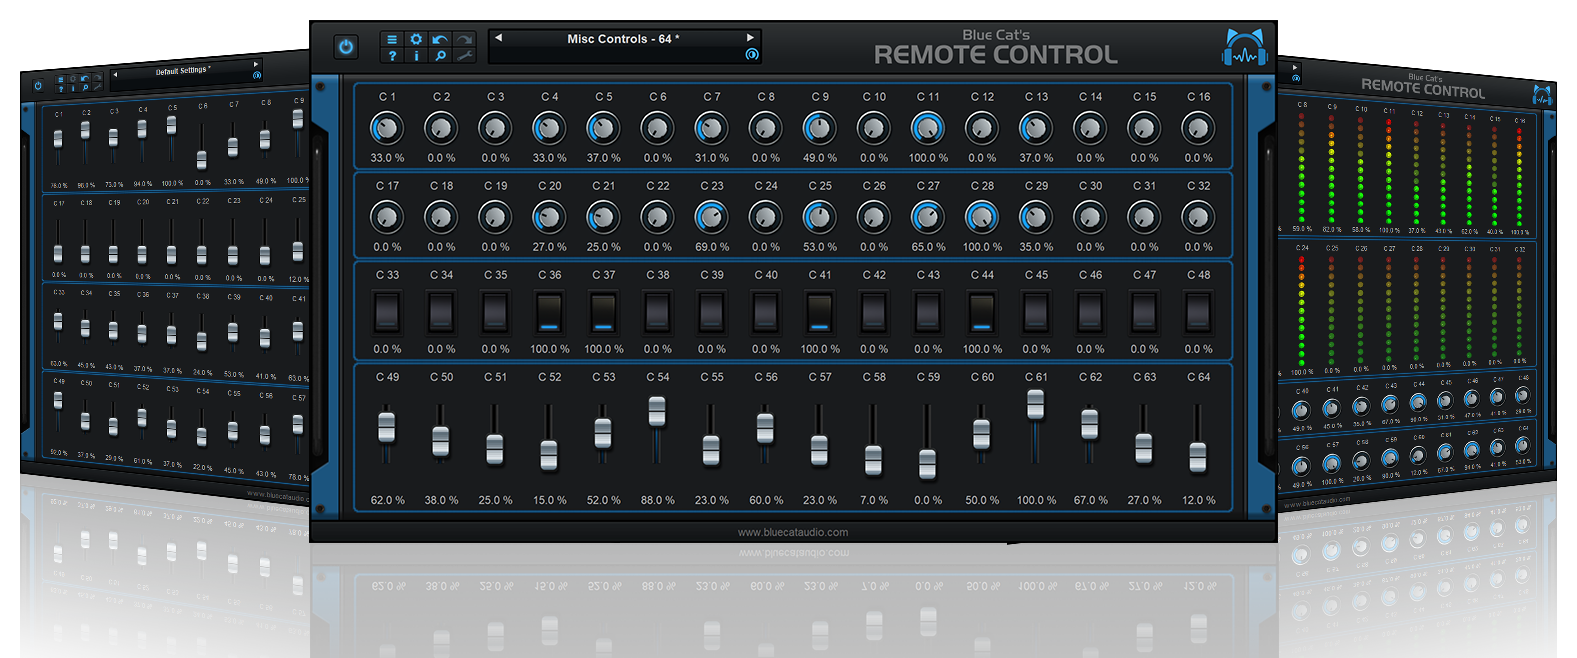 Blue Cat's Remote Control 2.32 screenshot